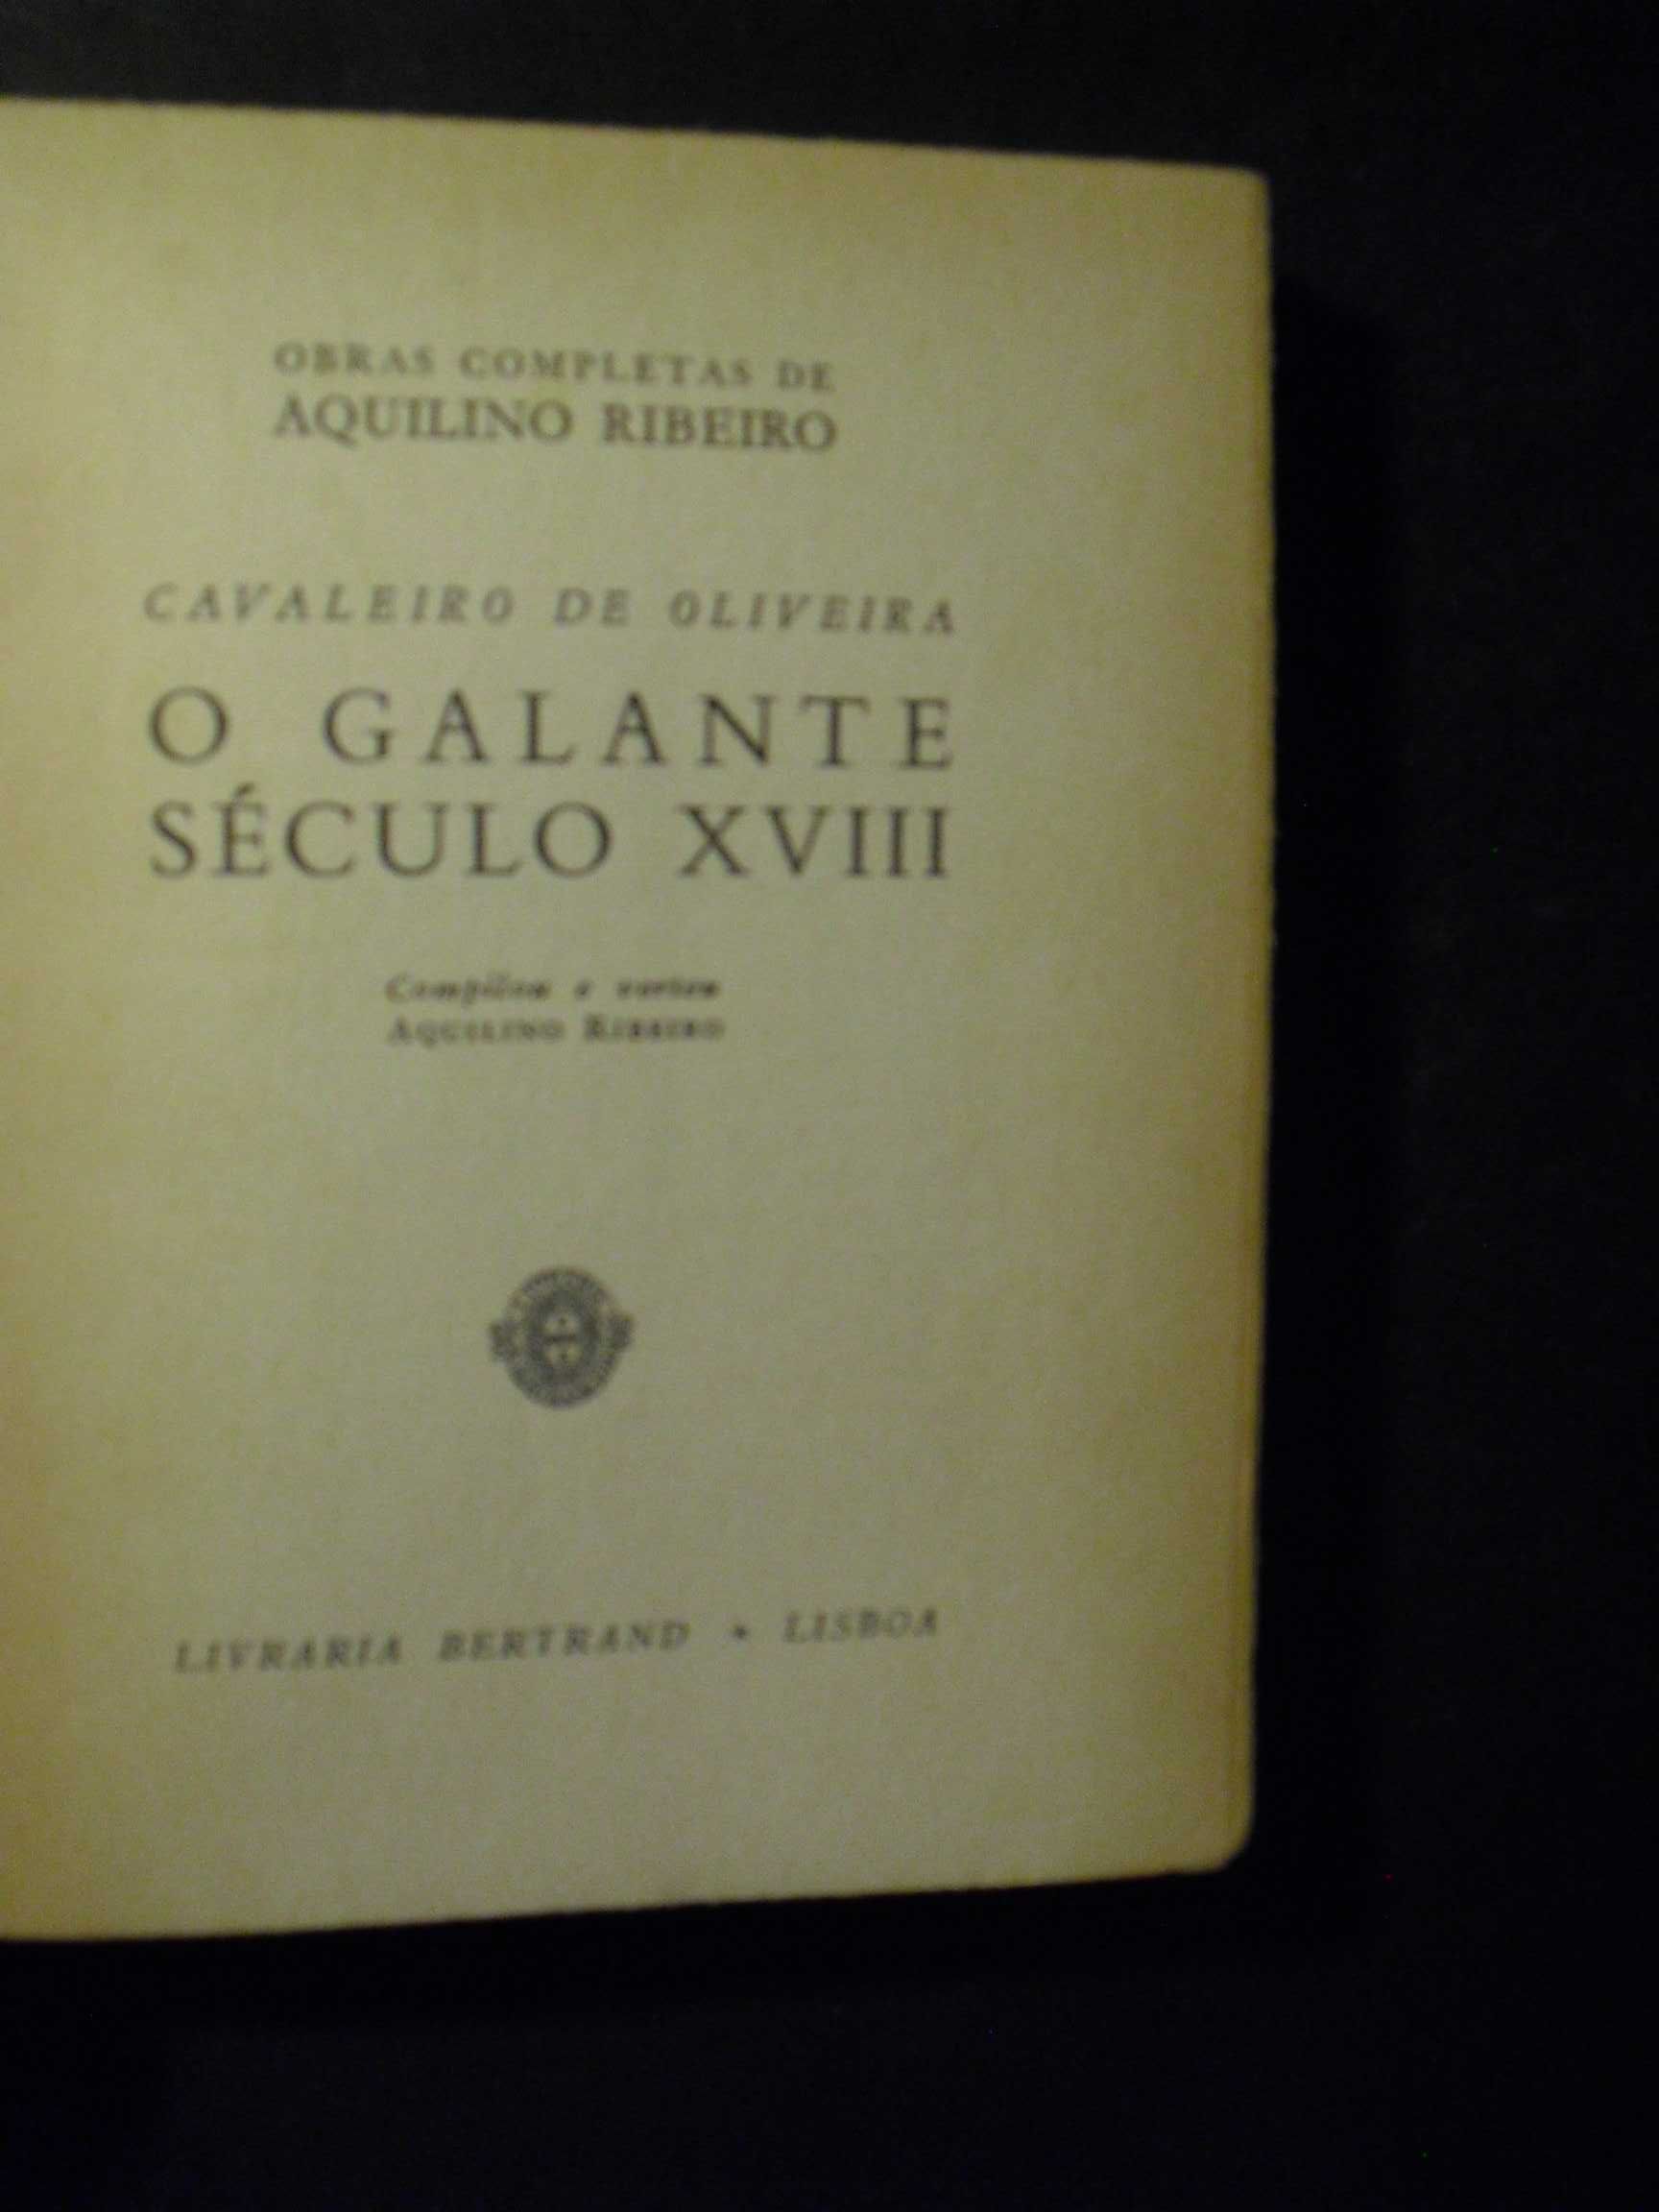 Ribeiro (Aquilino);Galante Século XVIII-Textos Cavaleiro de Oliveira;